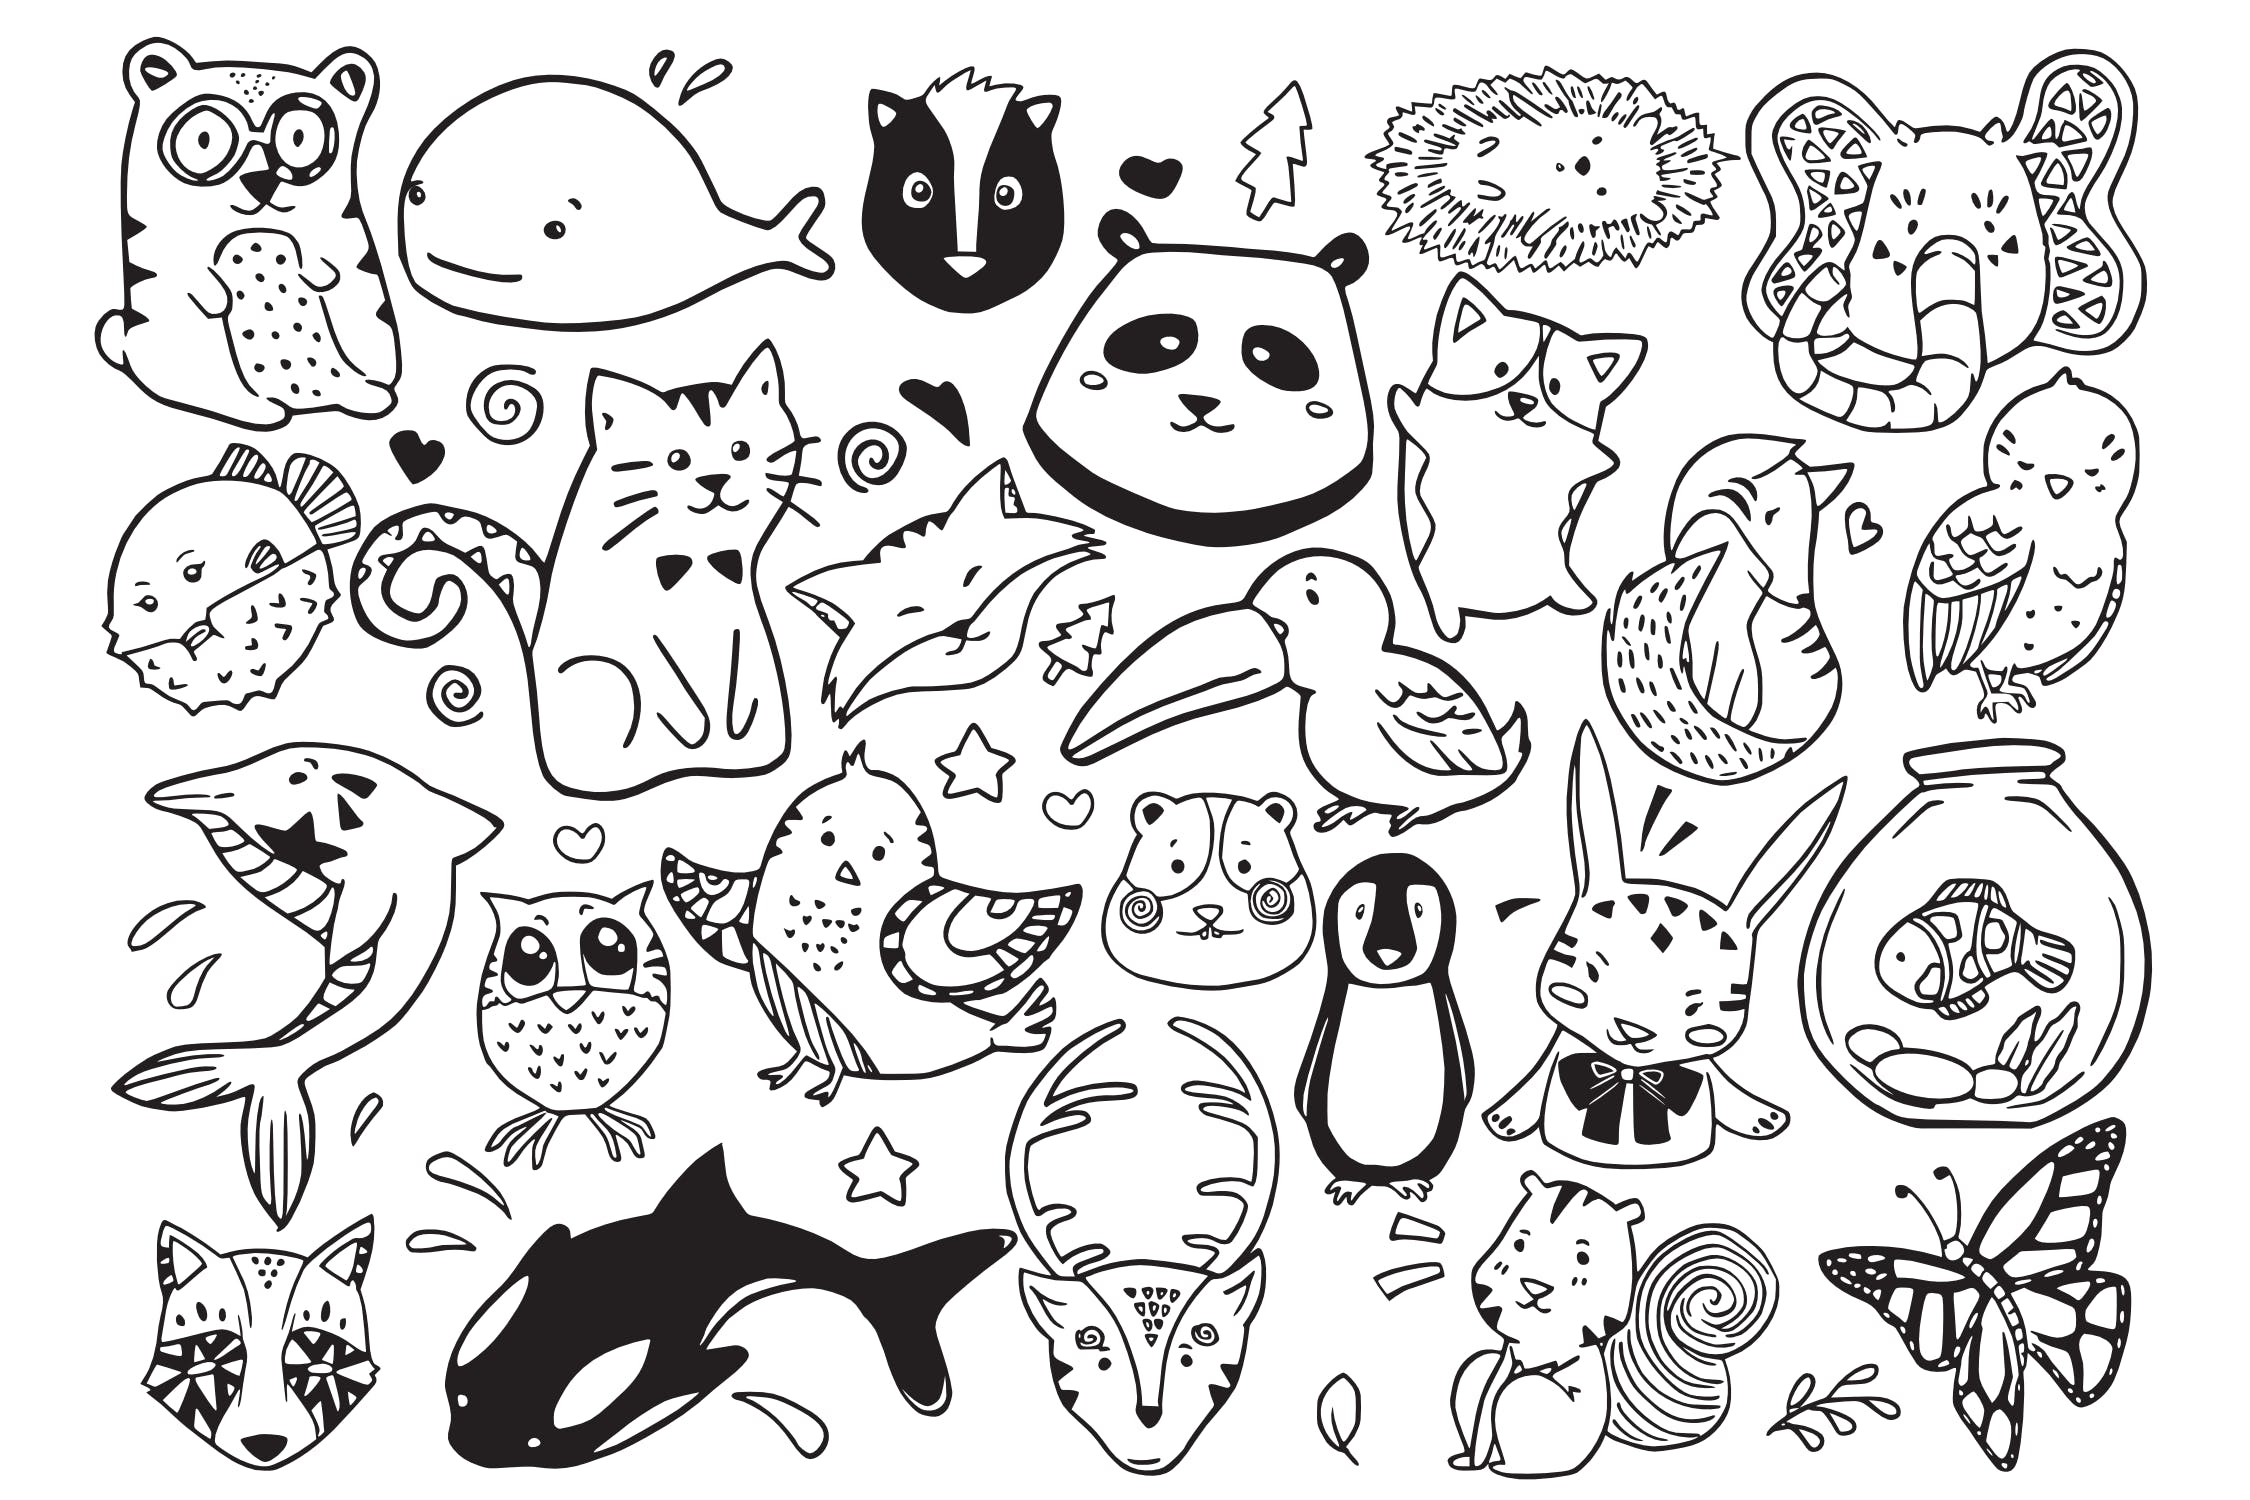 可爱卡通动物涂鸦手绘矢量图案素材 Cute Animal Doodle Vector插图(1)